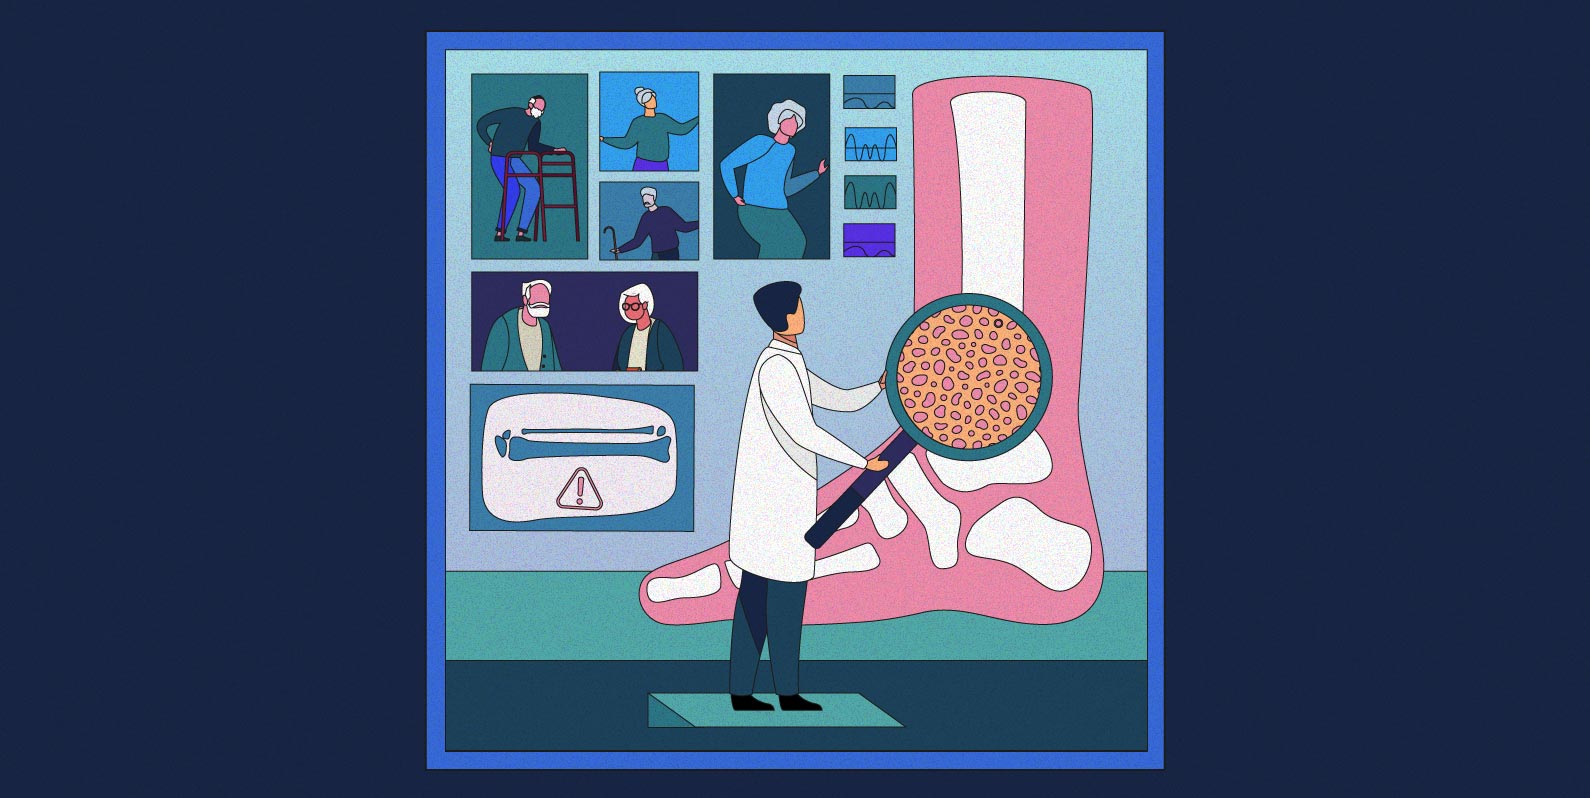 Mapear riscos otimiza tratamentos para osteoporose